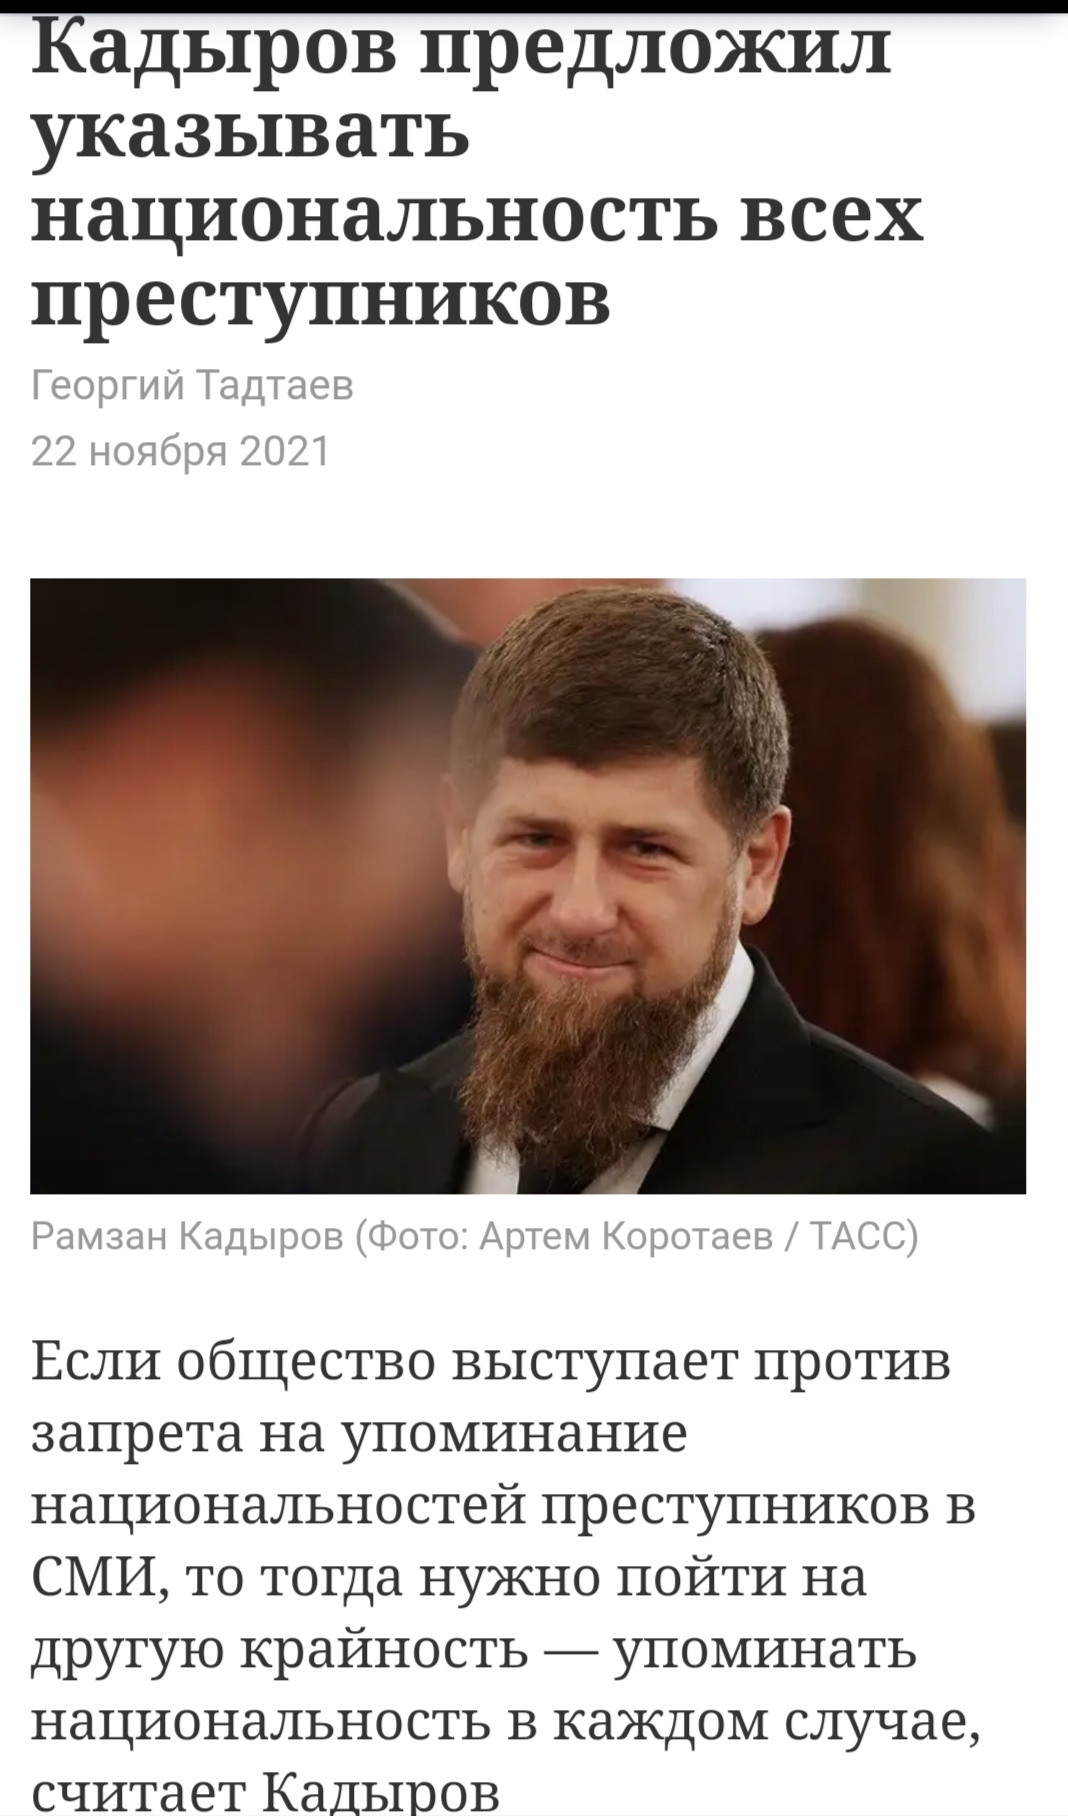 Что означает слово дон кадыров. Чеченец Дон. Дон Рамзан Кадыров что значит. Что означает Дон в речи Кадырова. Дон у чеченцев что значит.